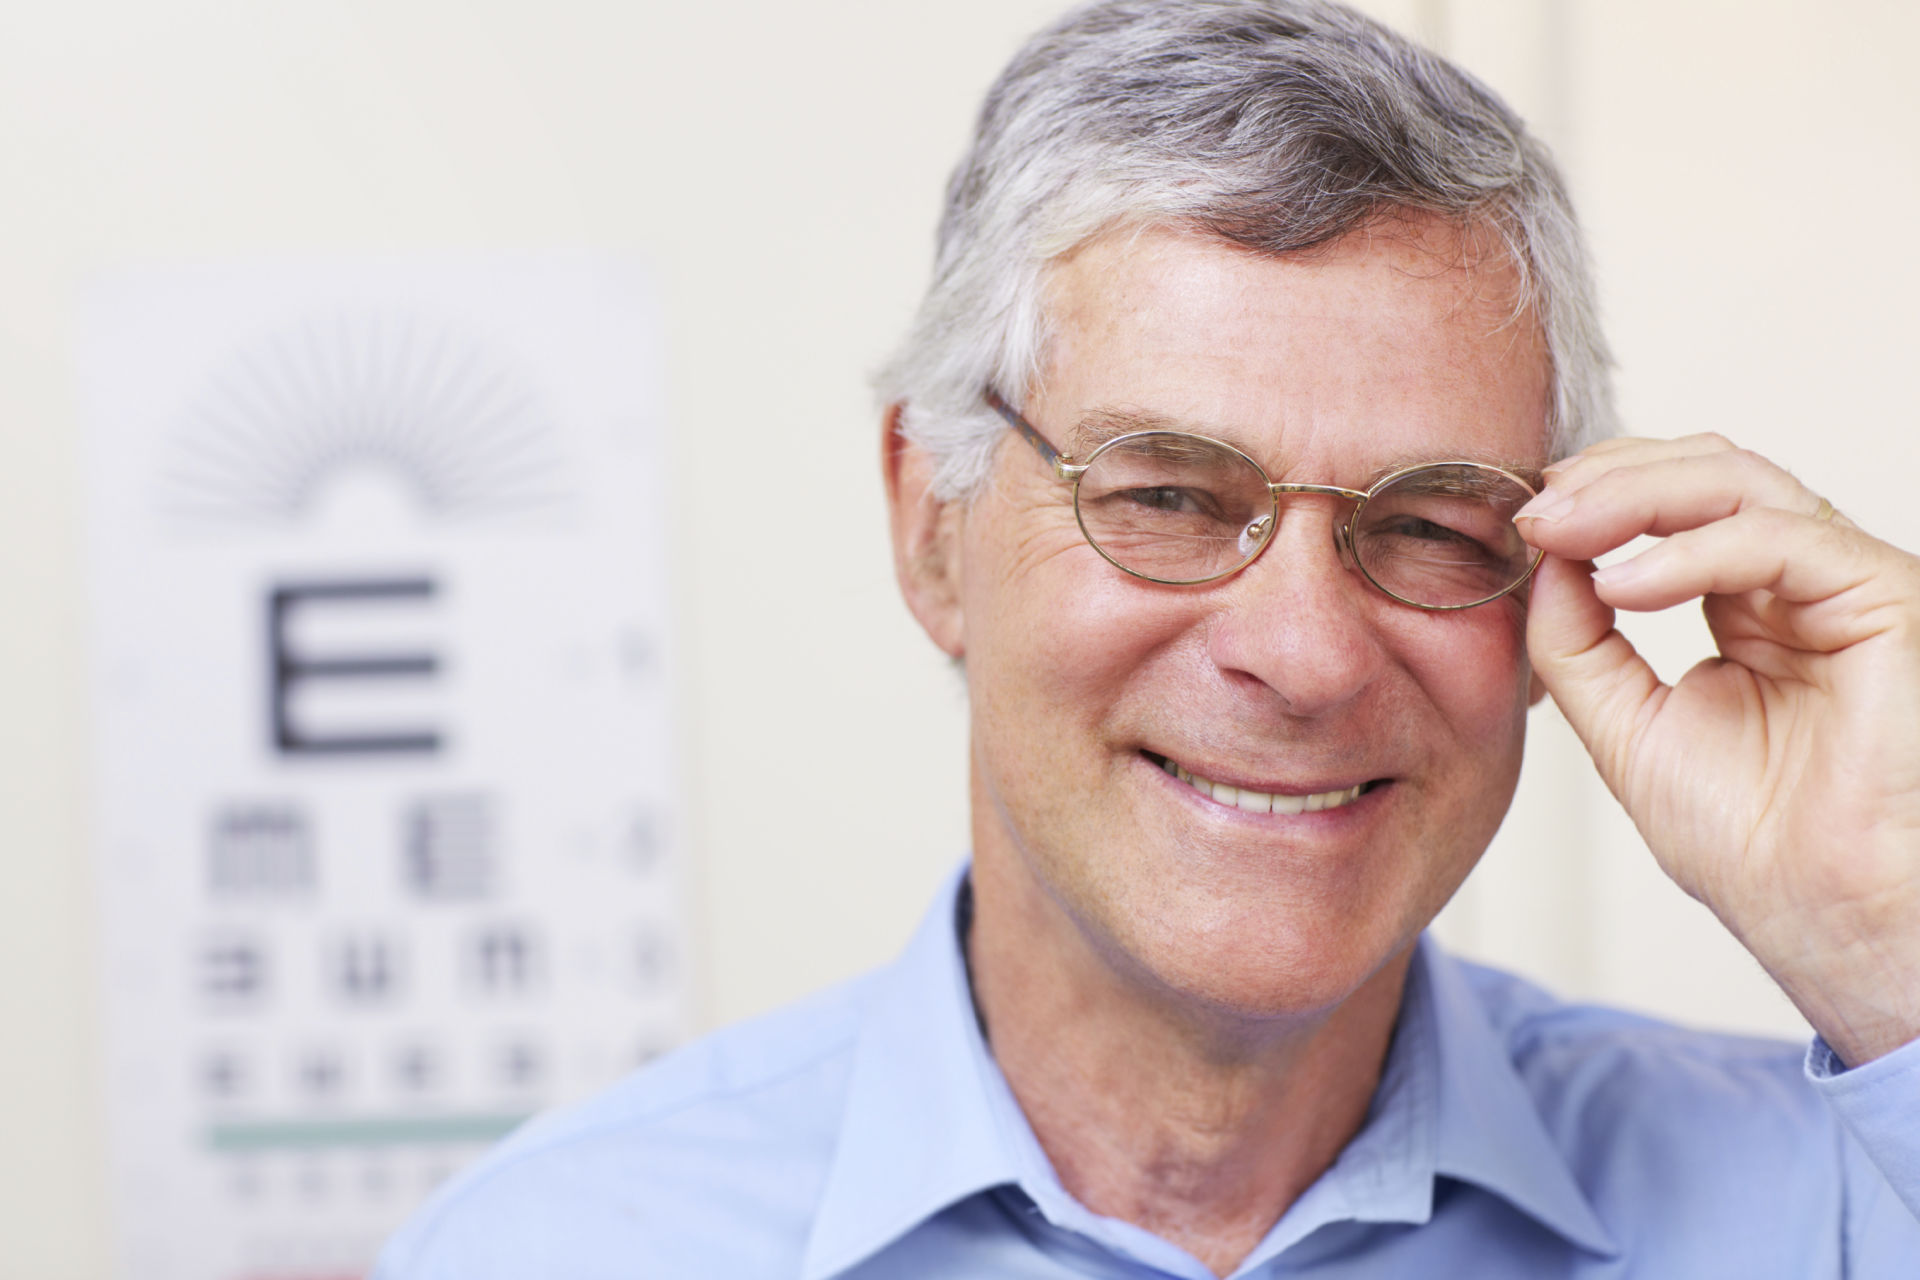 Hacksaw Jim Duggan has vision corrective surgery by Dr. Gayton!